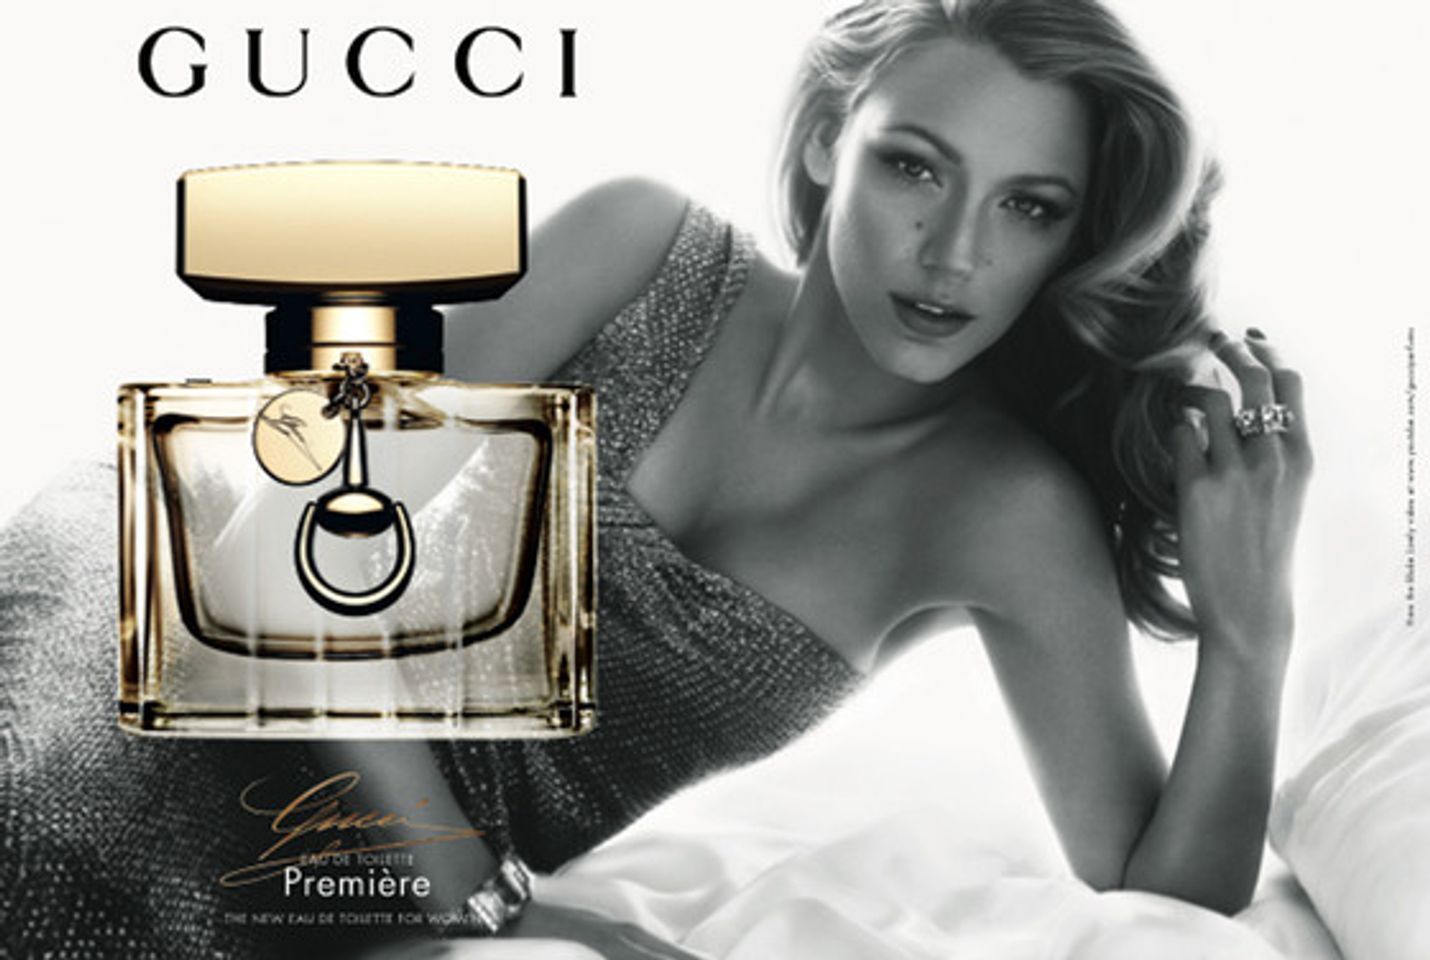 Chai nước hoa Gucci Premiere For Women nhấn mạnh khả năng tỏa sáng trong mỗi người phụ nữ